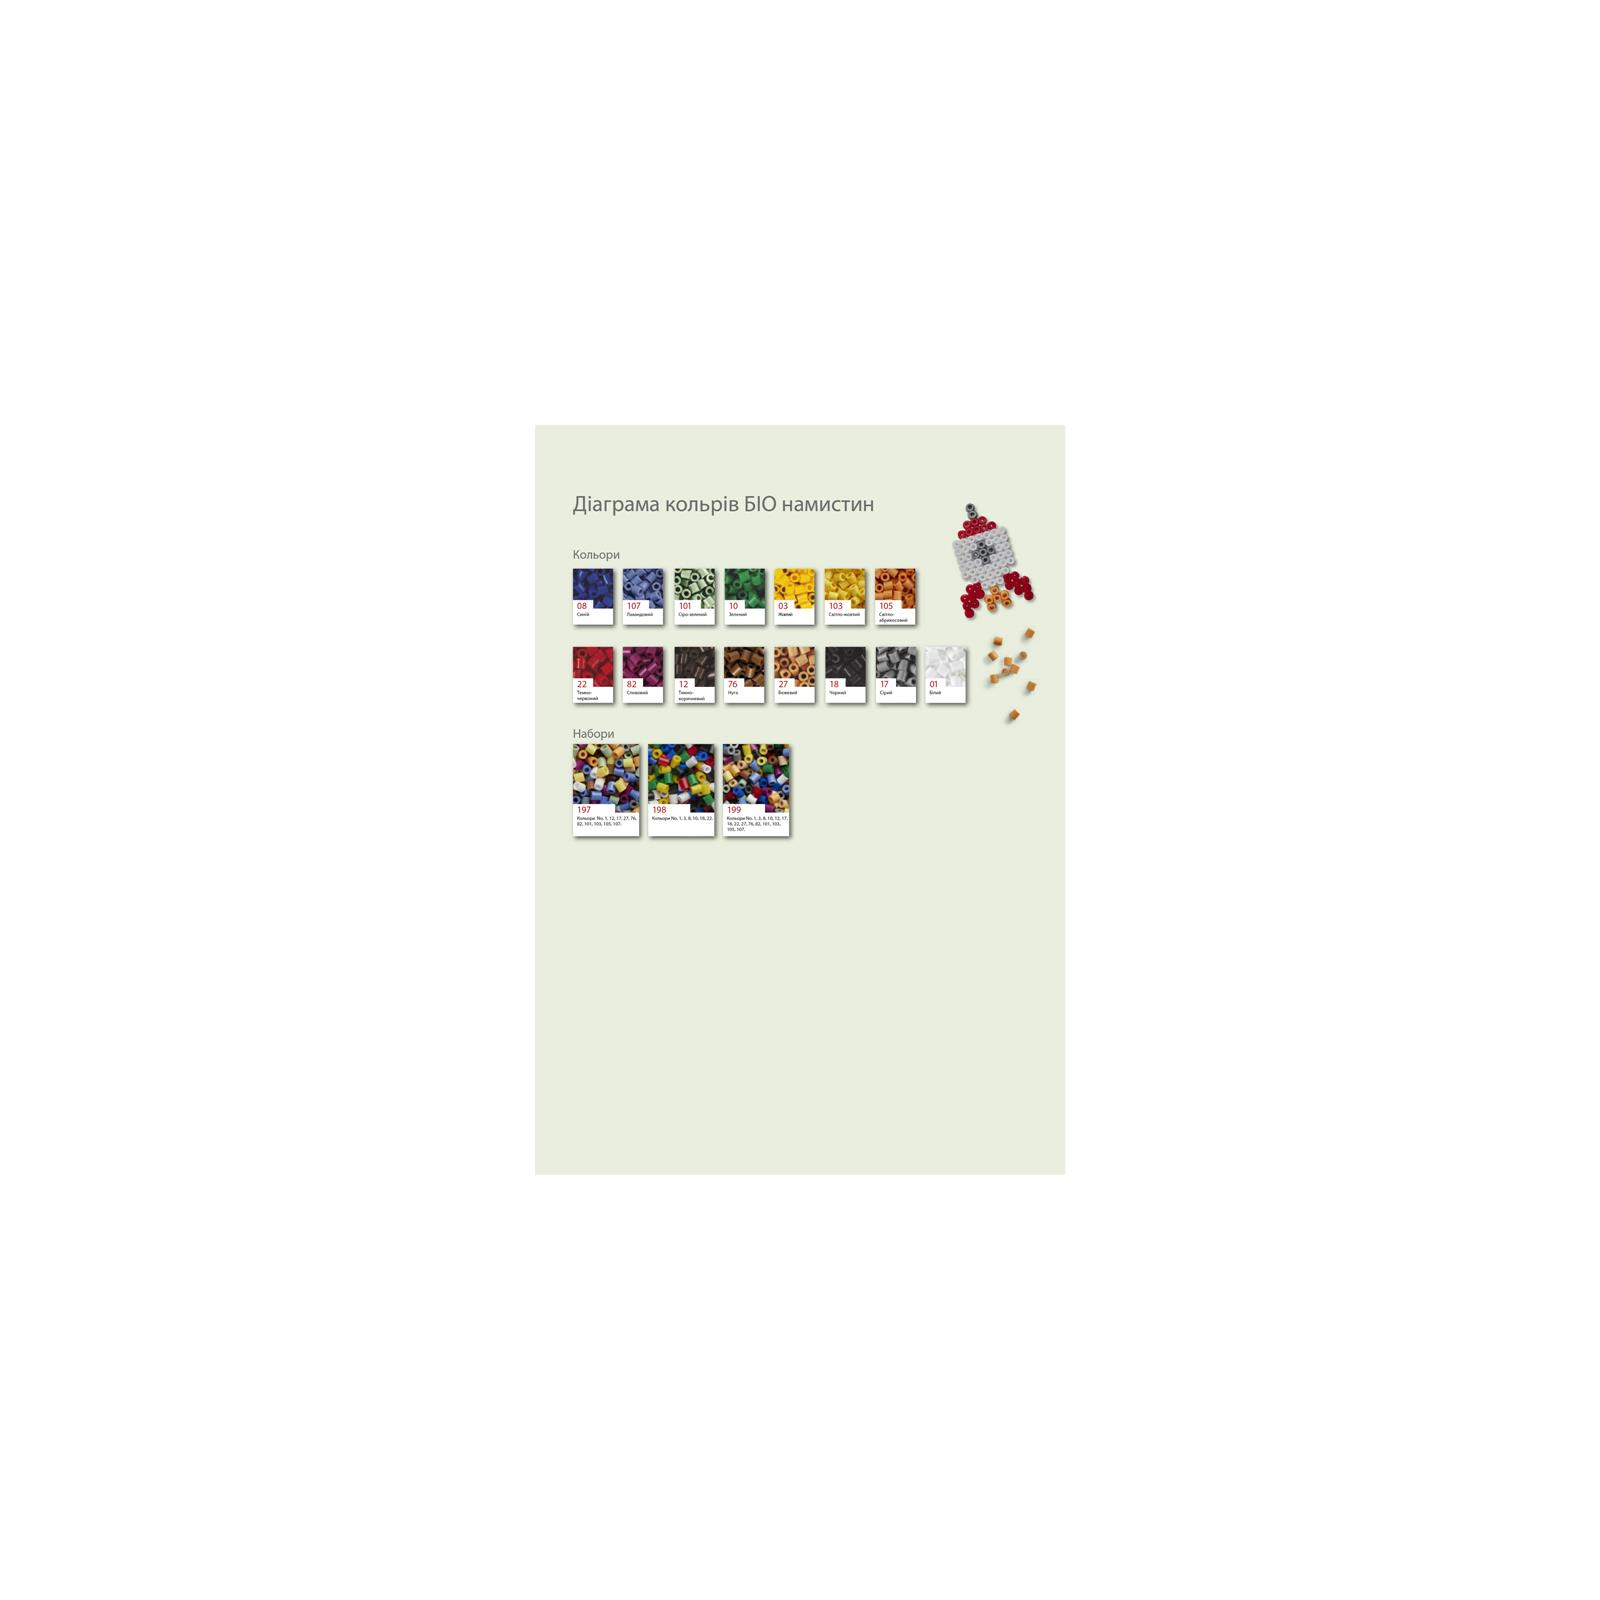 Набор для творчества Hama БИО цветные бусины, 10 цветов, 1000 шт термомозаика (HM-190-197) изображение 2